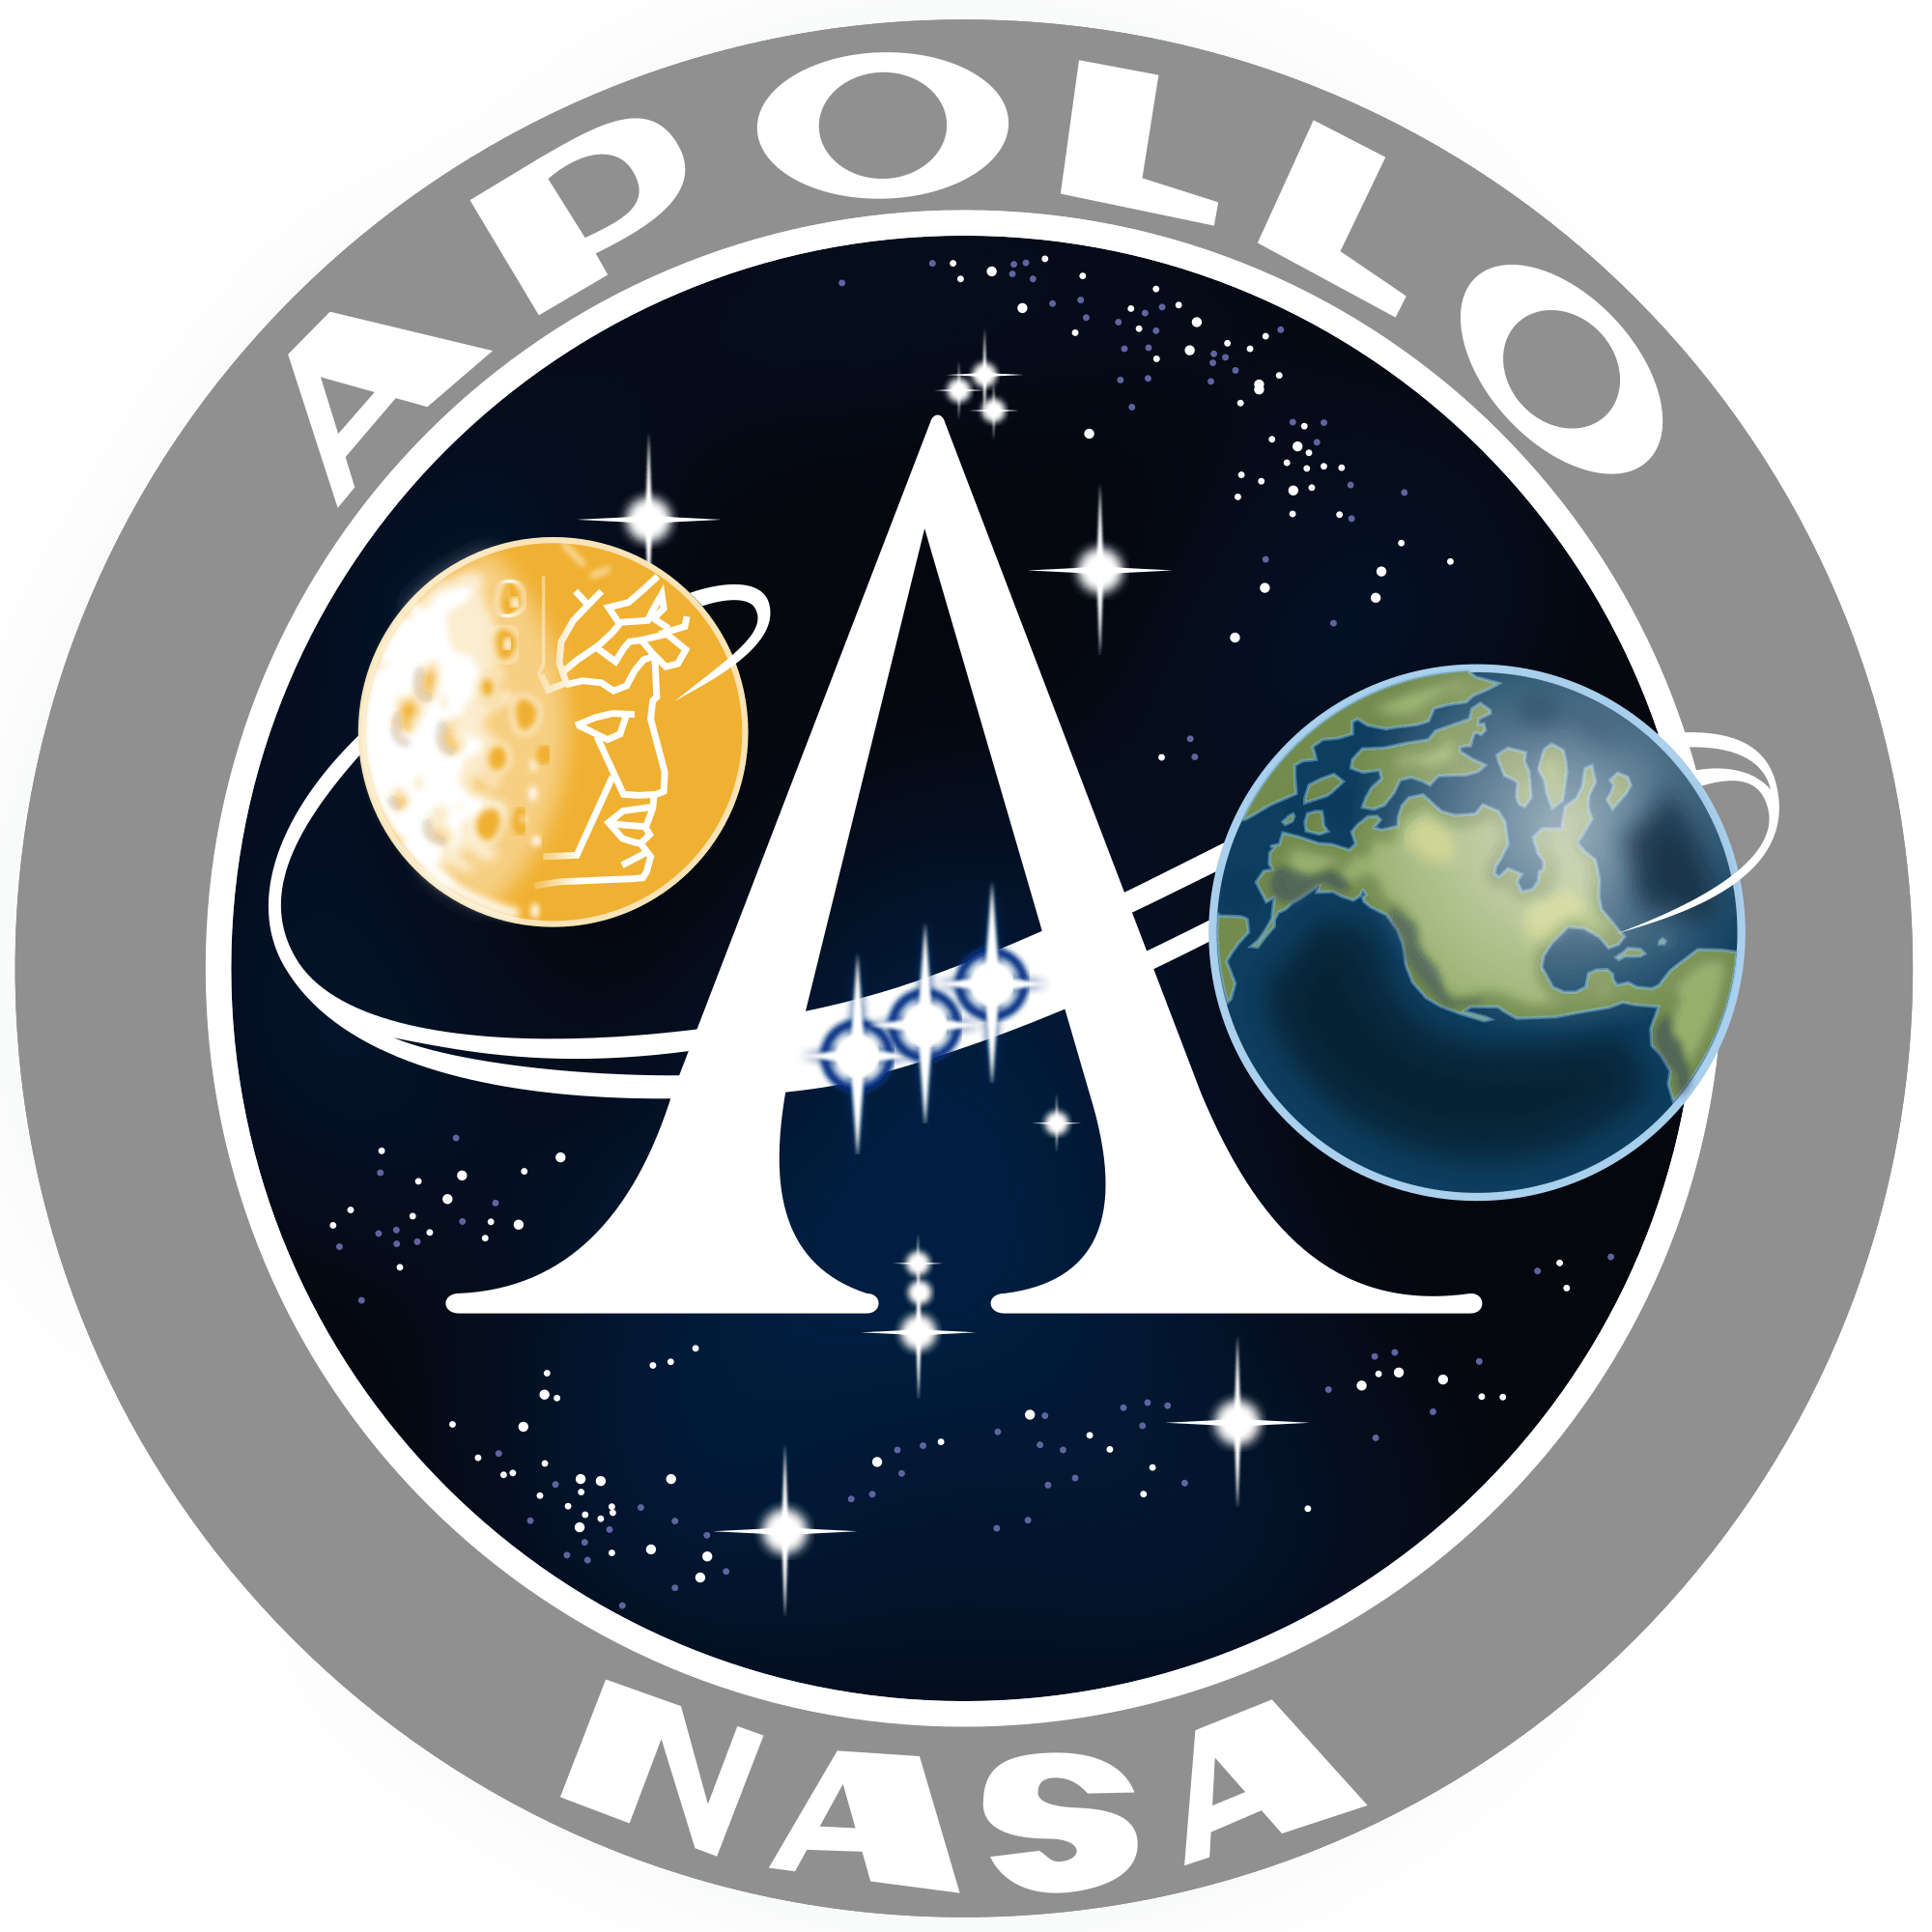 1963 NASA Logo - Apollo program